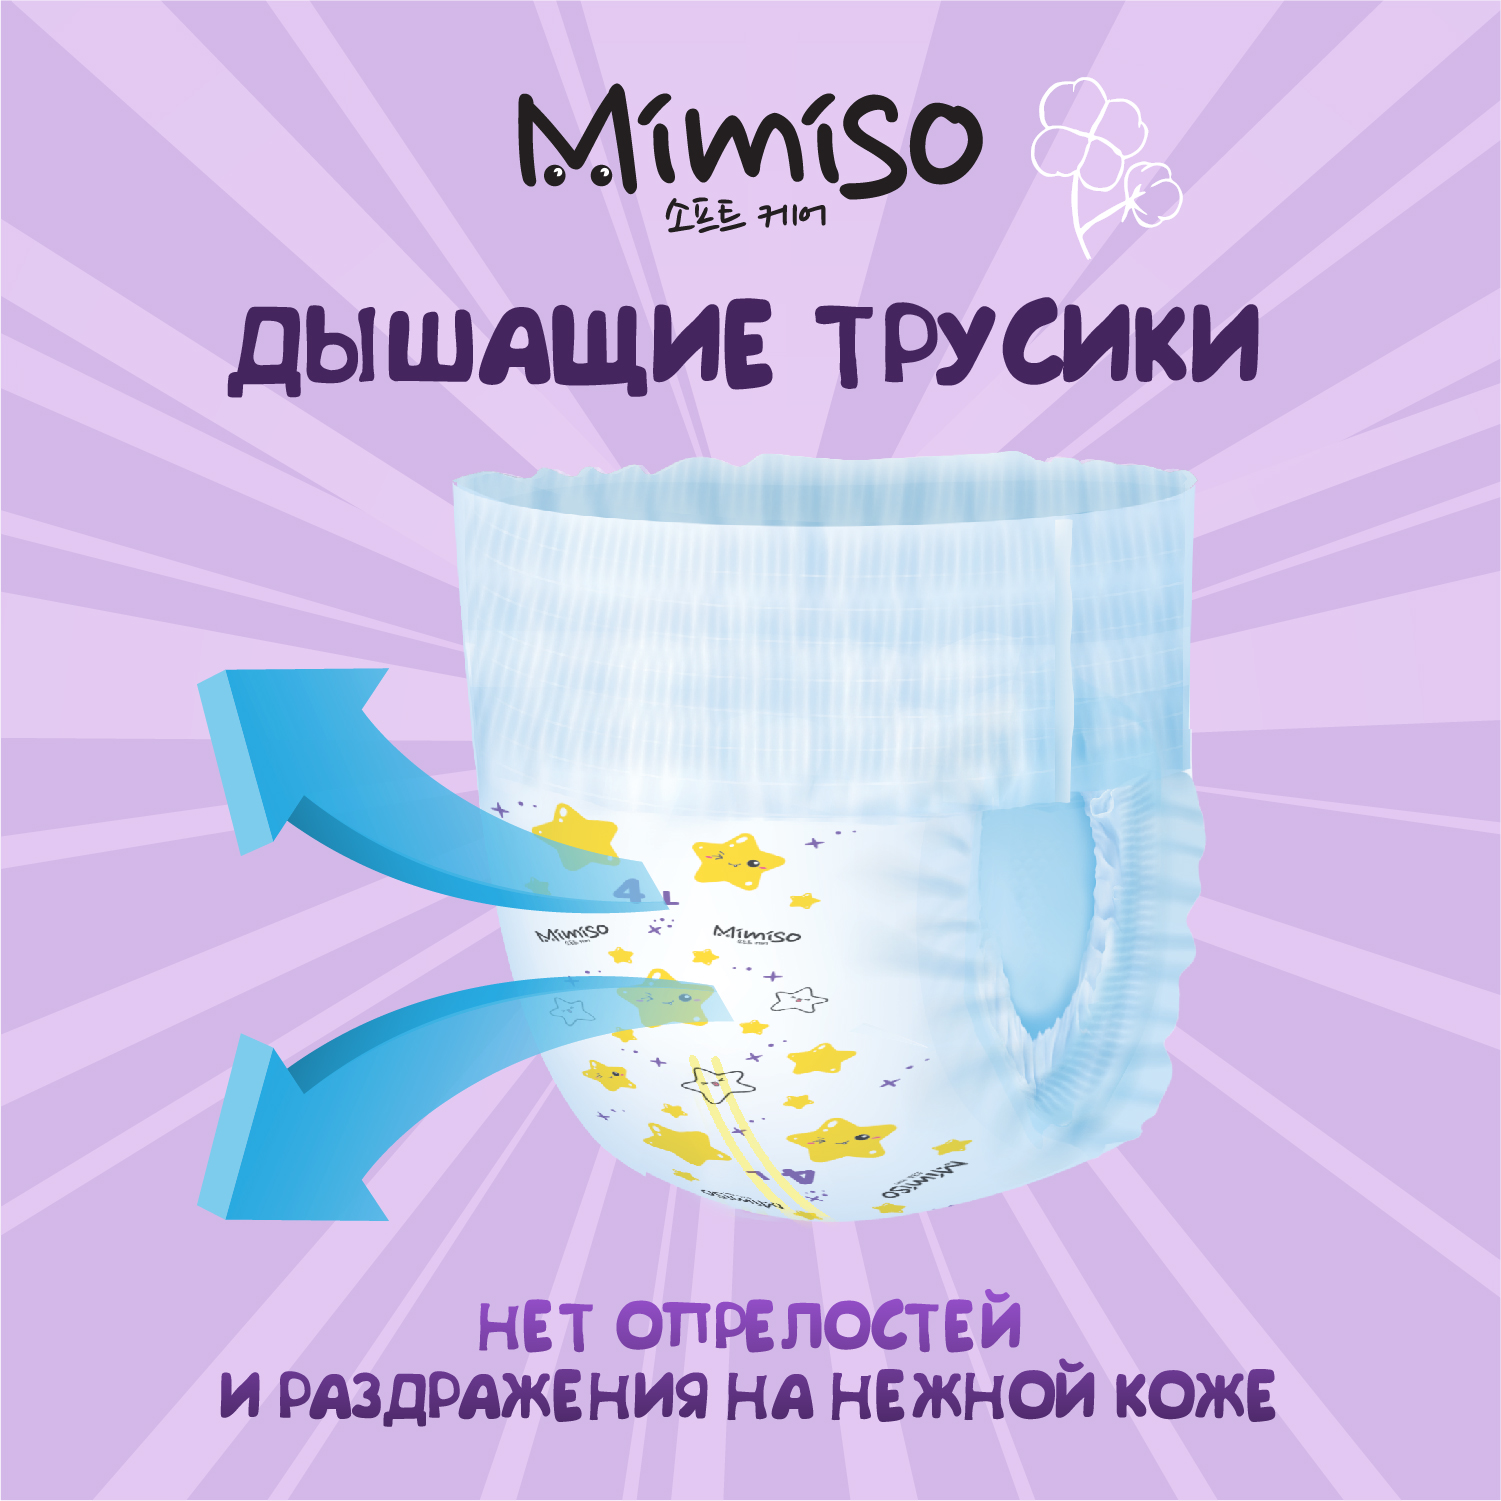 Трусики Mimiso одноразовые для детей 5/XL 13-20 кг mega-pack 78шт - фото 2